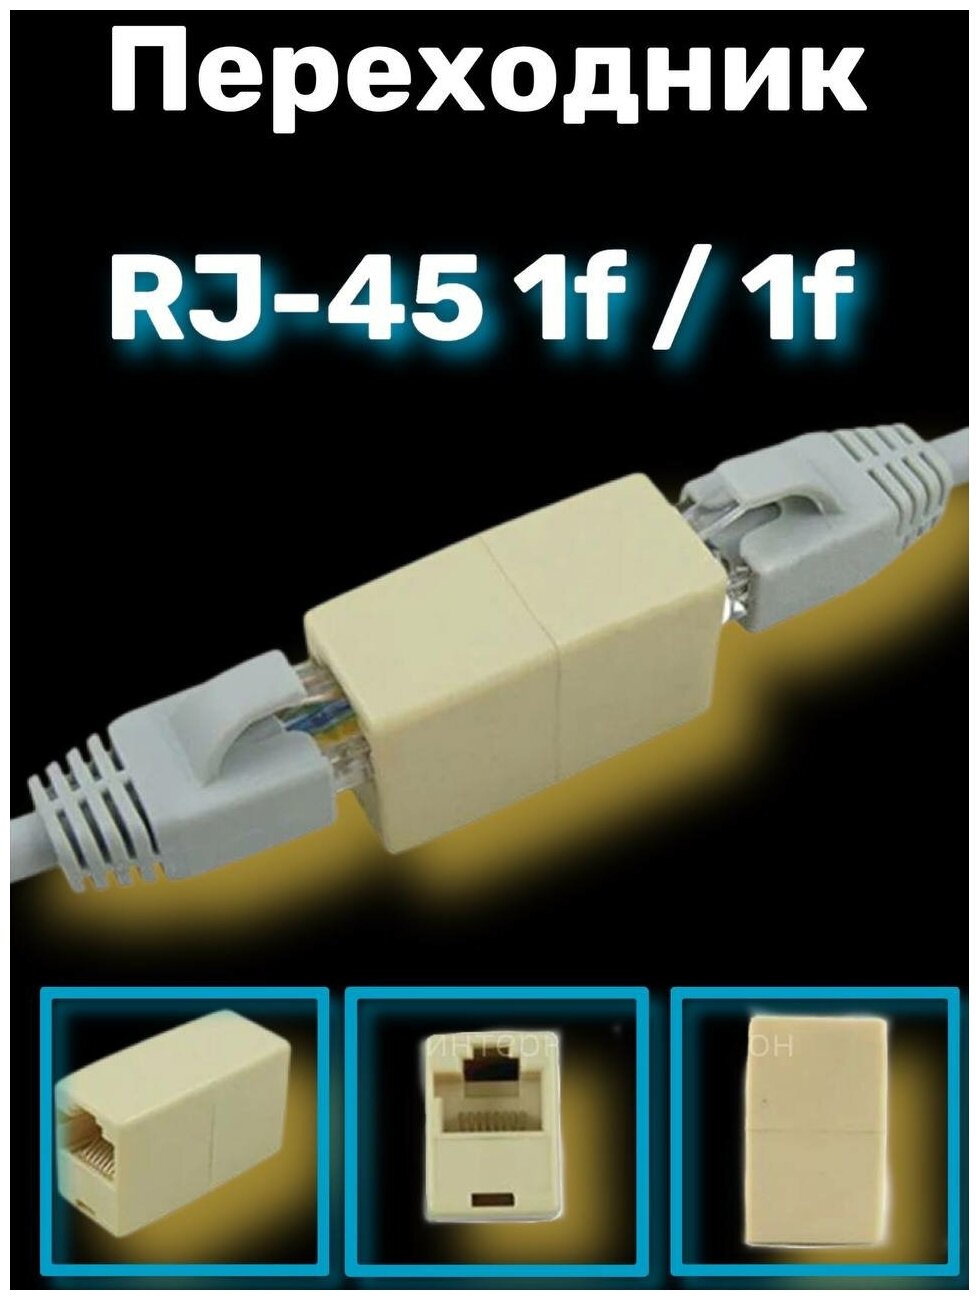 Переходник-разветвитель RJ-45 1F/1F соединитель витой пары lan internet ethernet интернет кабель utp удлинитель RJ45 RJ-45